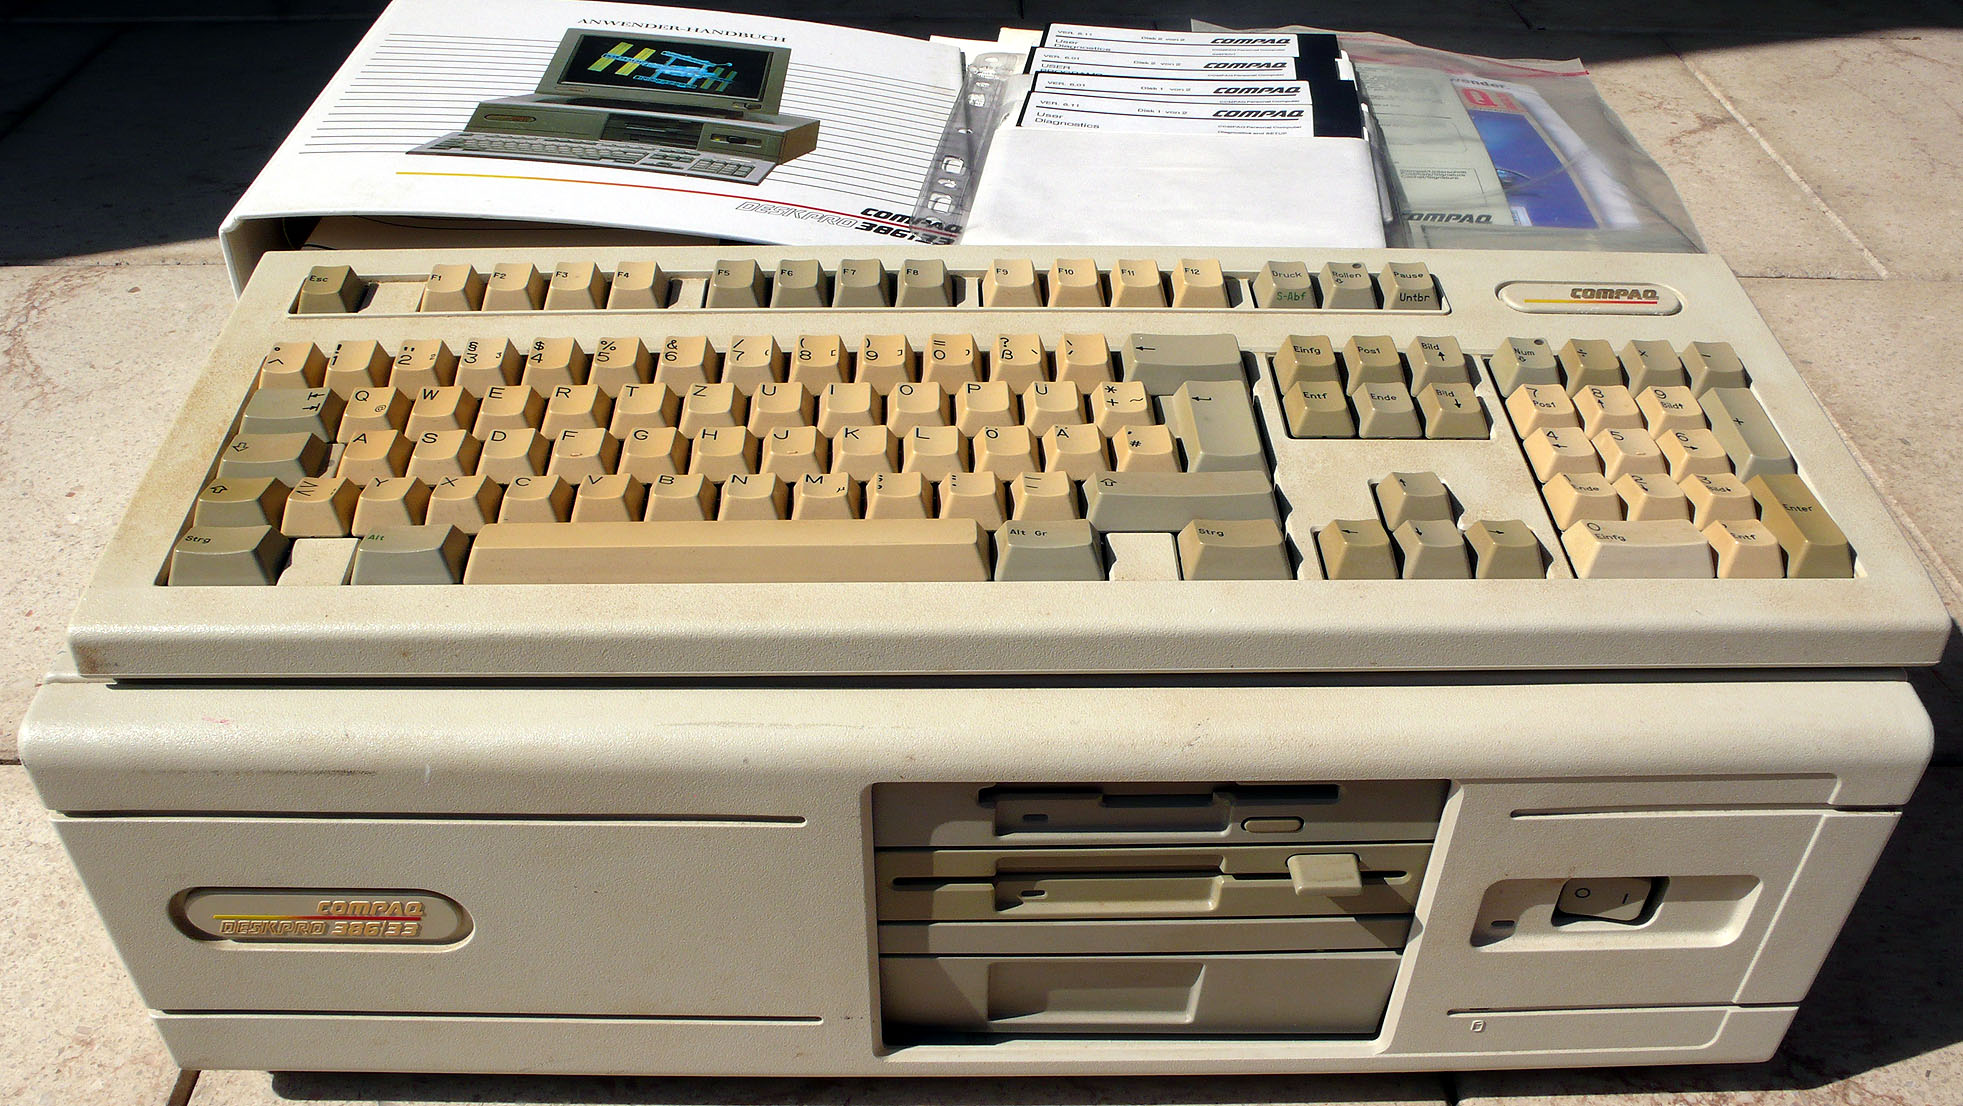 Compaq DeskPro 386/33 MHz von 1989